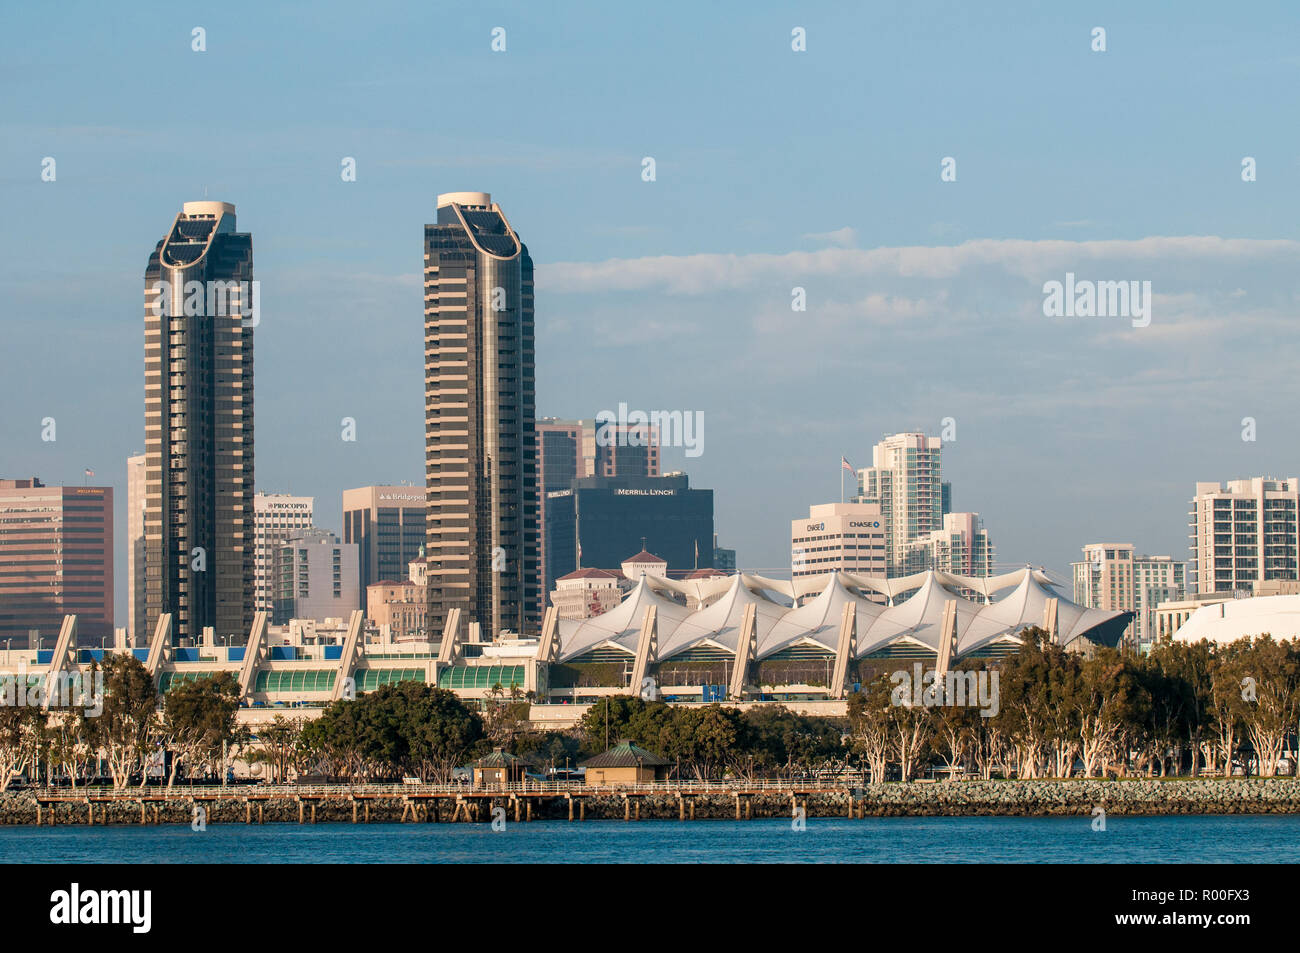 Le San Diego Convention Center et port de San Diego, en Californie. Banque D'Images